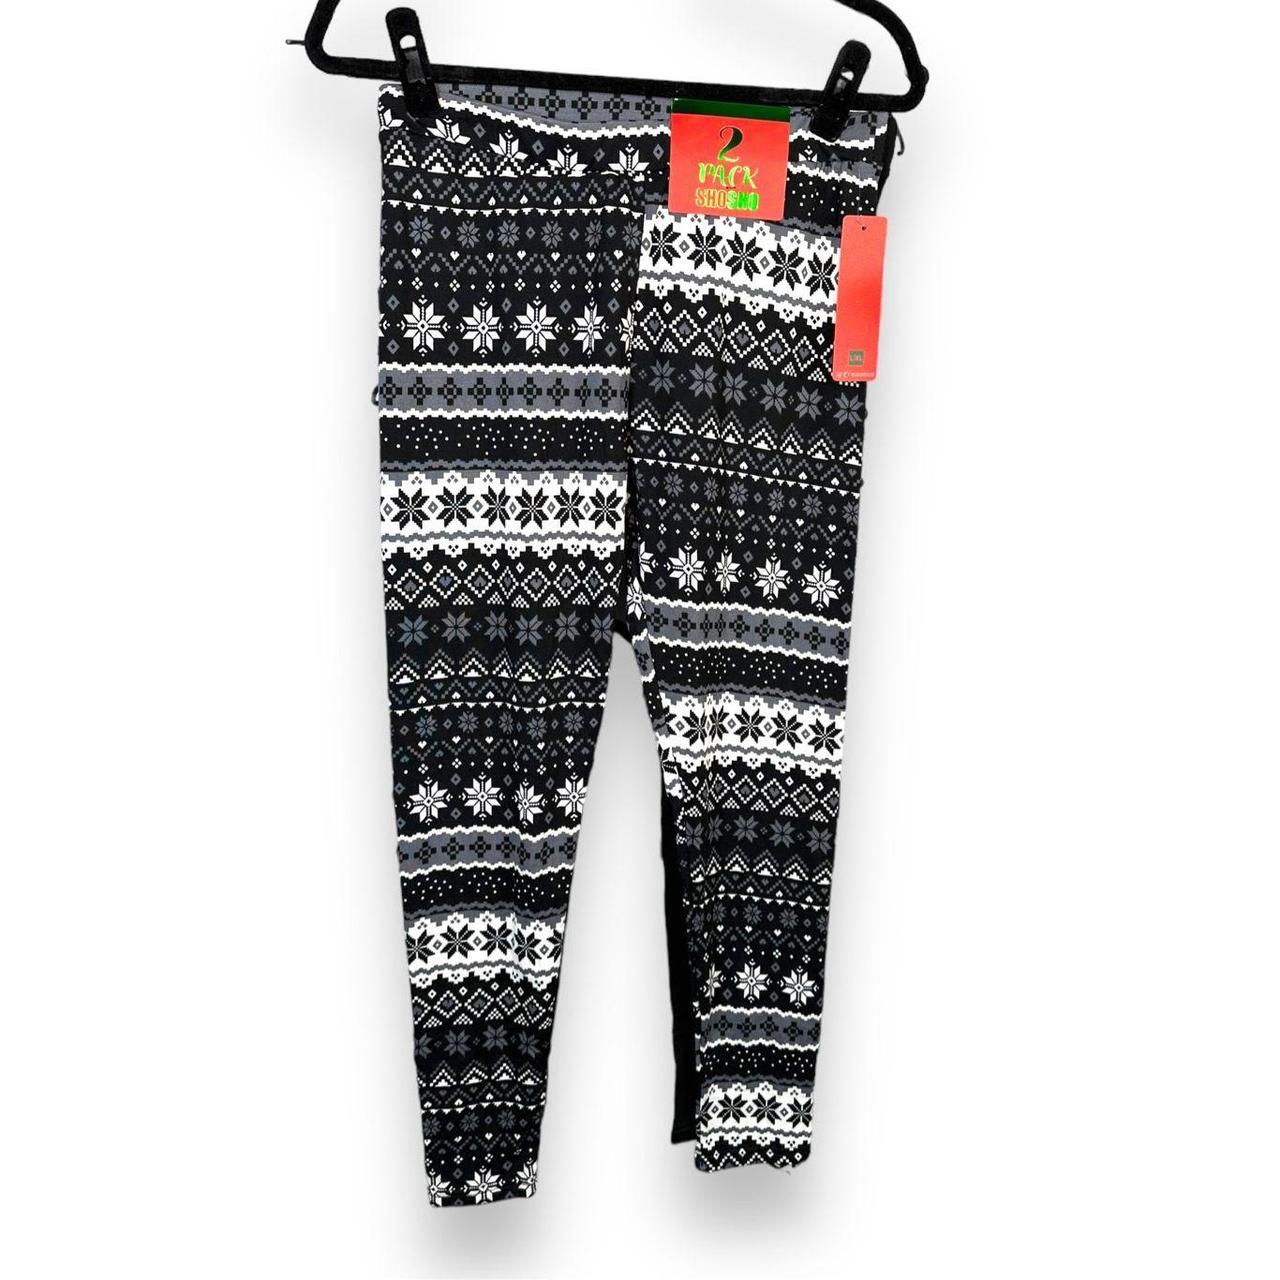 Fleece leggings are a must for winter. Brand Shosho, - Depop